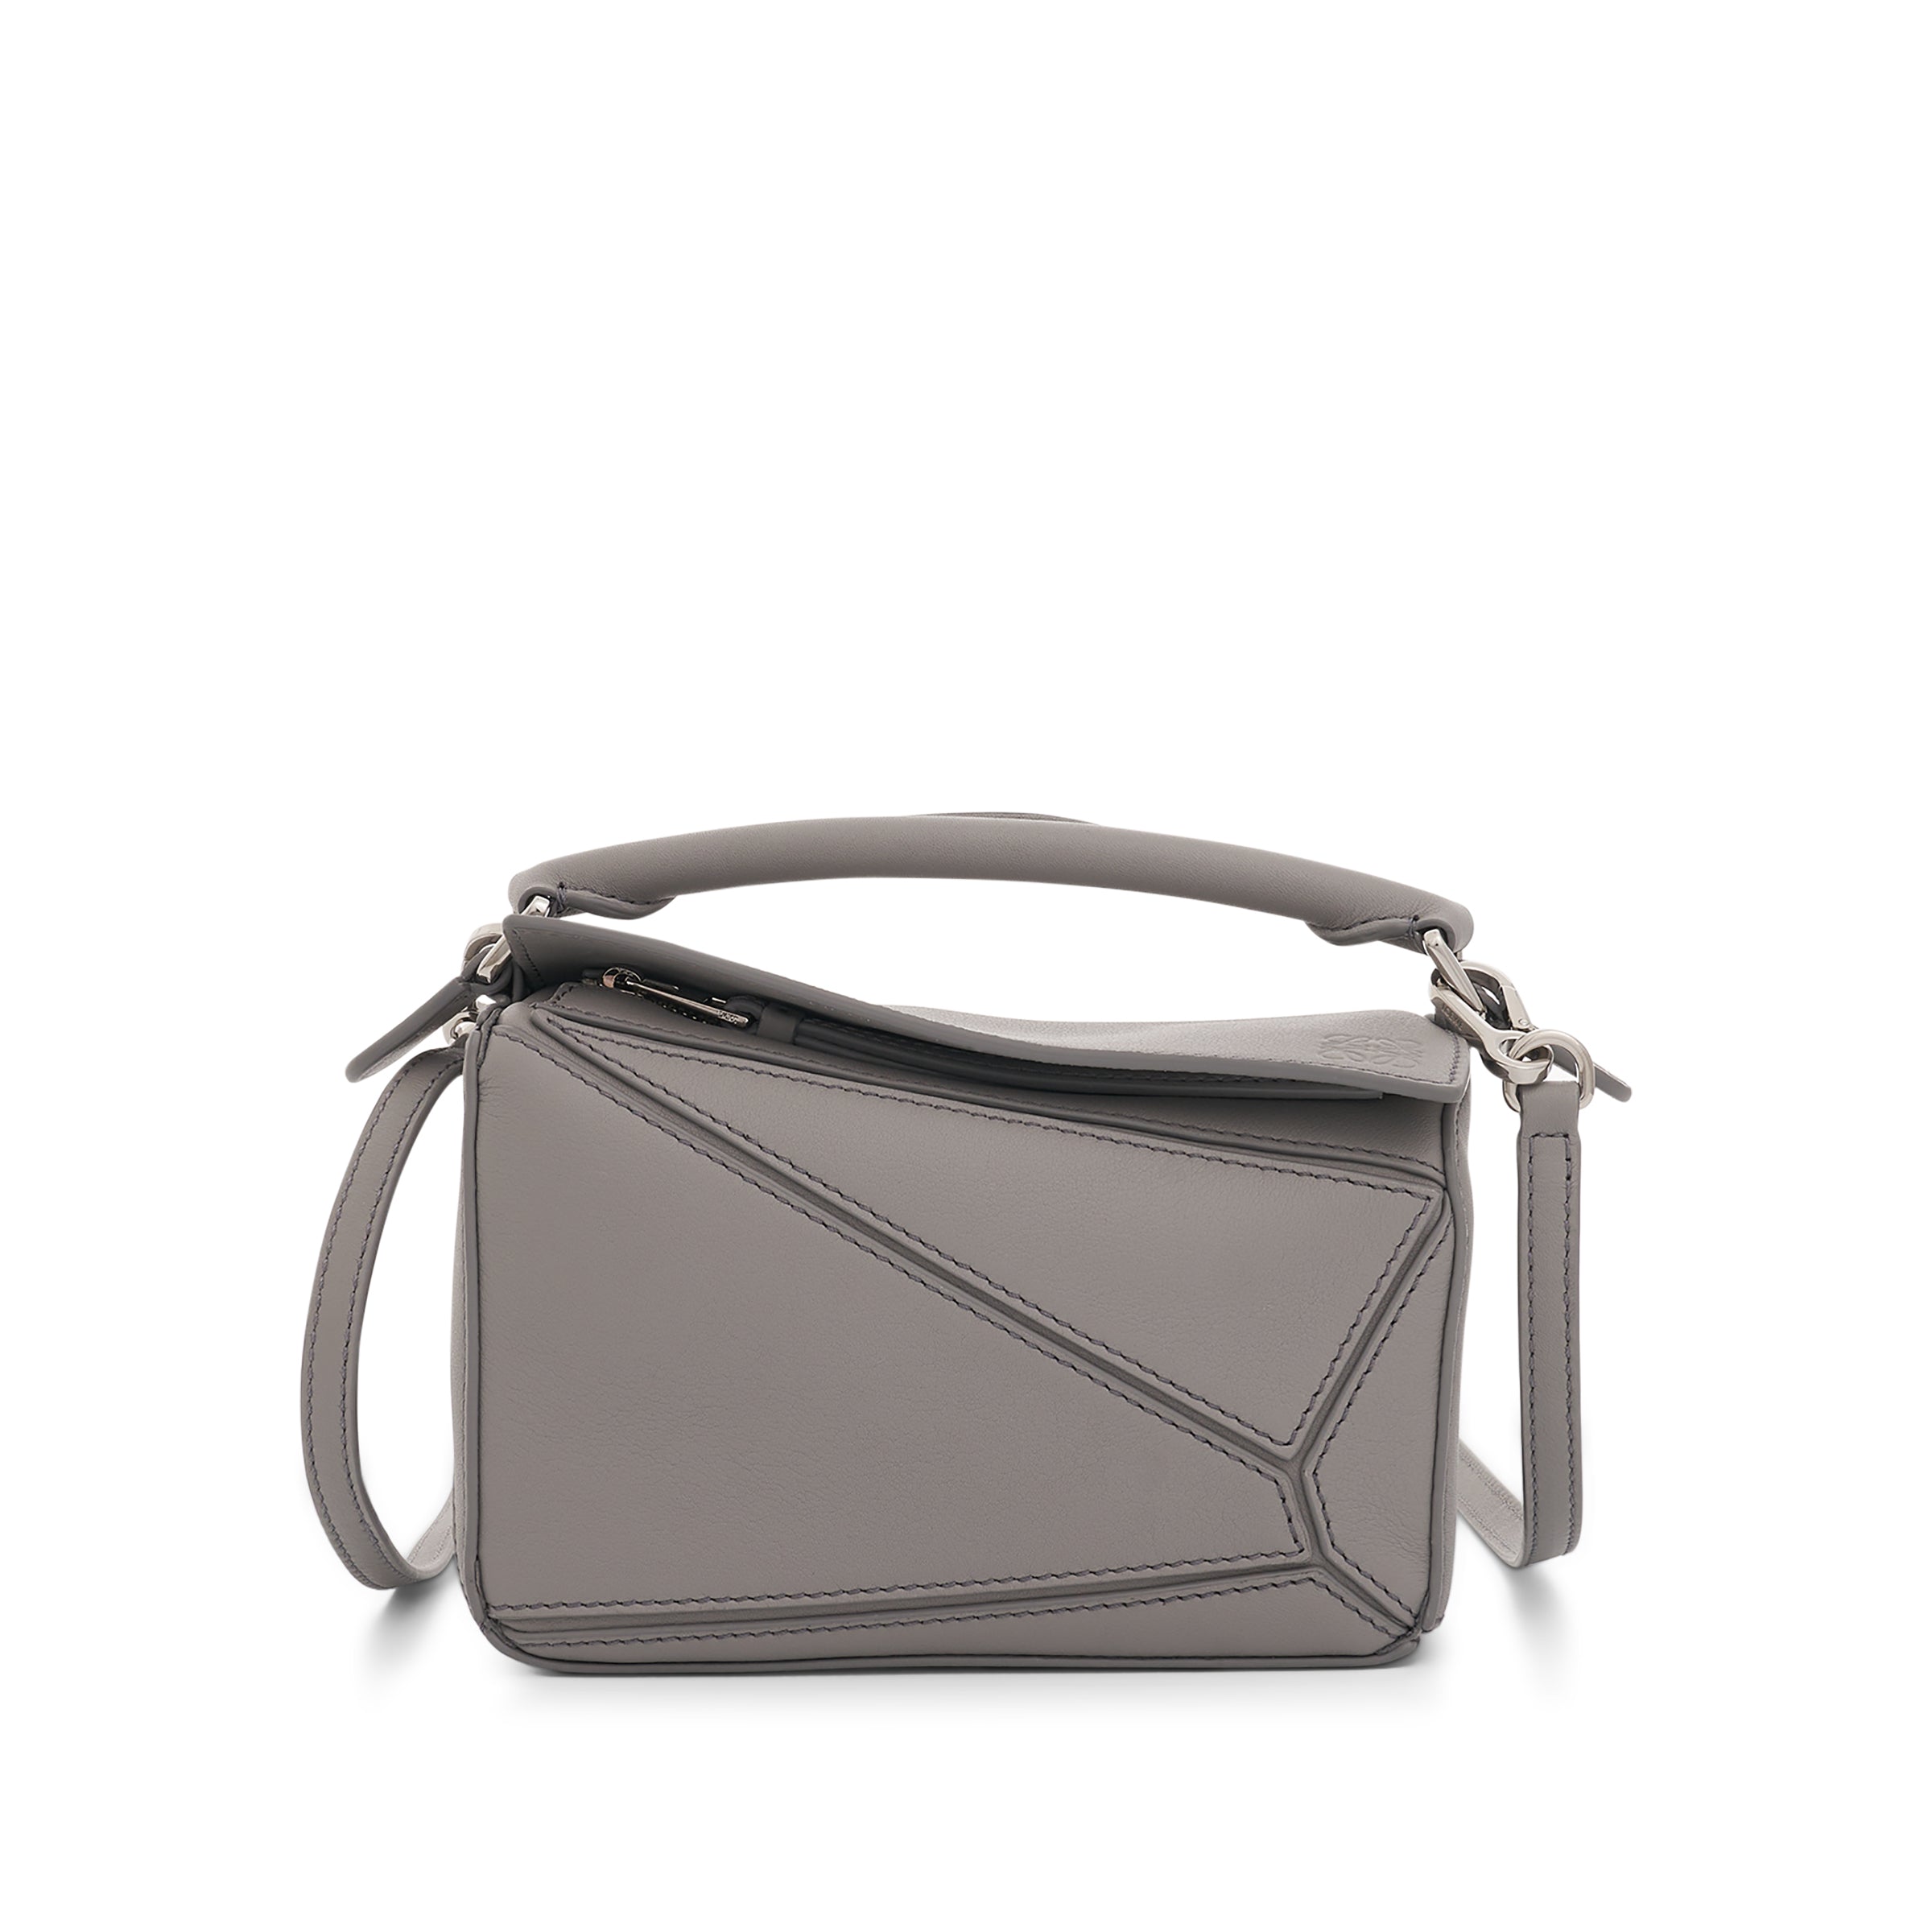 Mini Puzzle Bag in Classic Calfskin in Pearl Grey